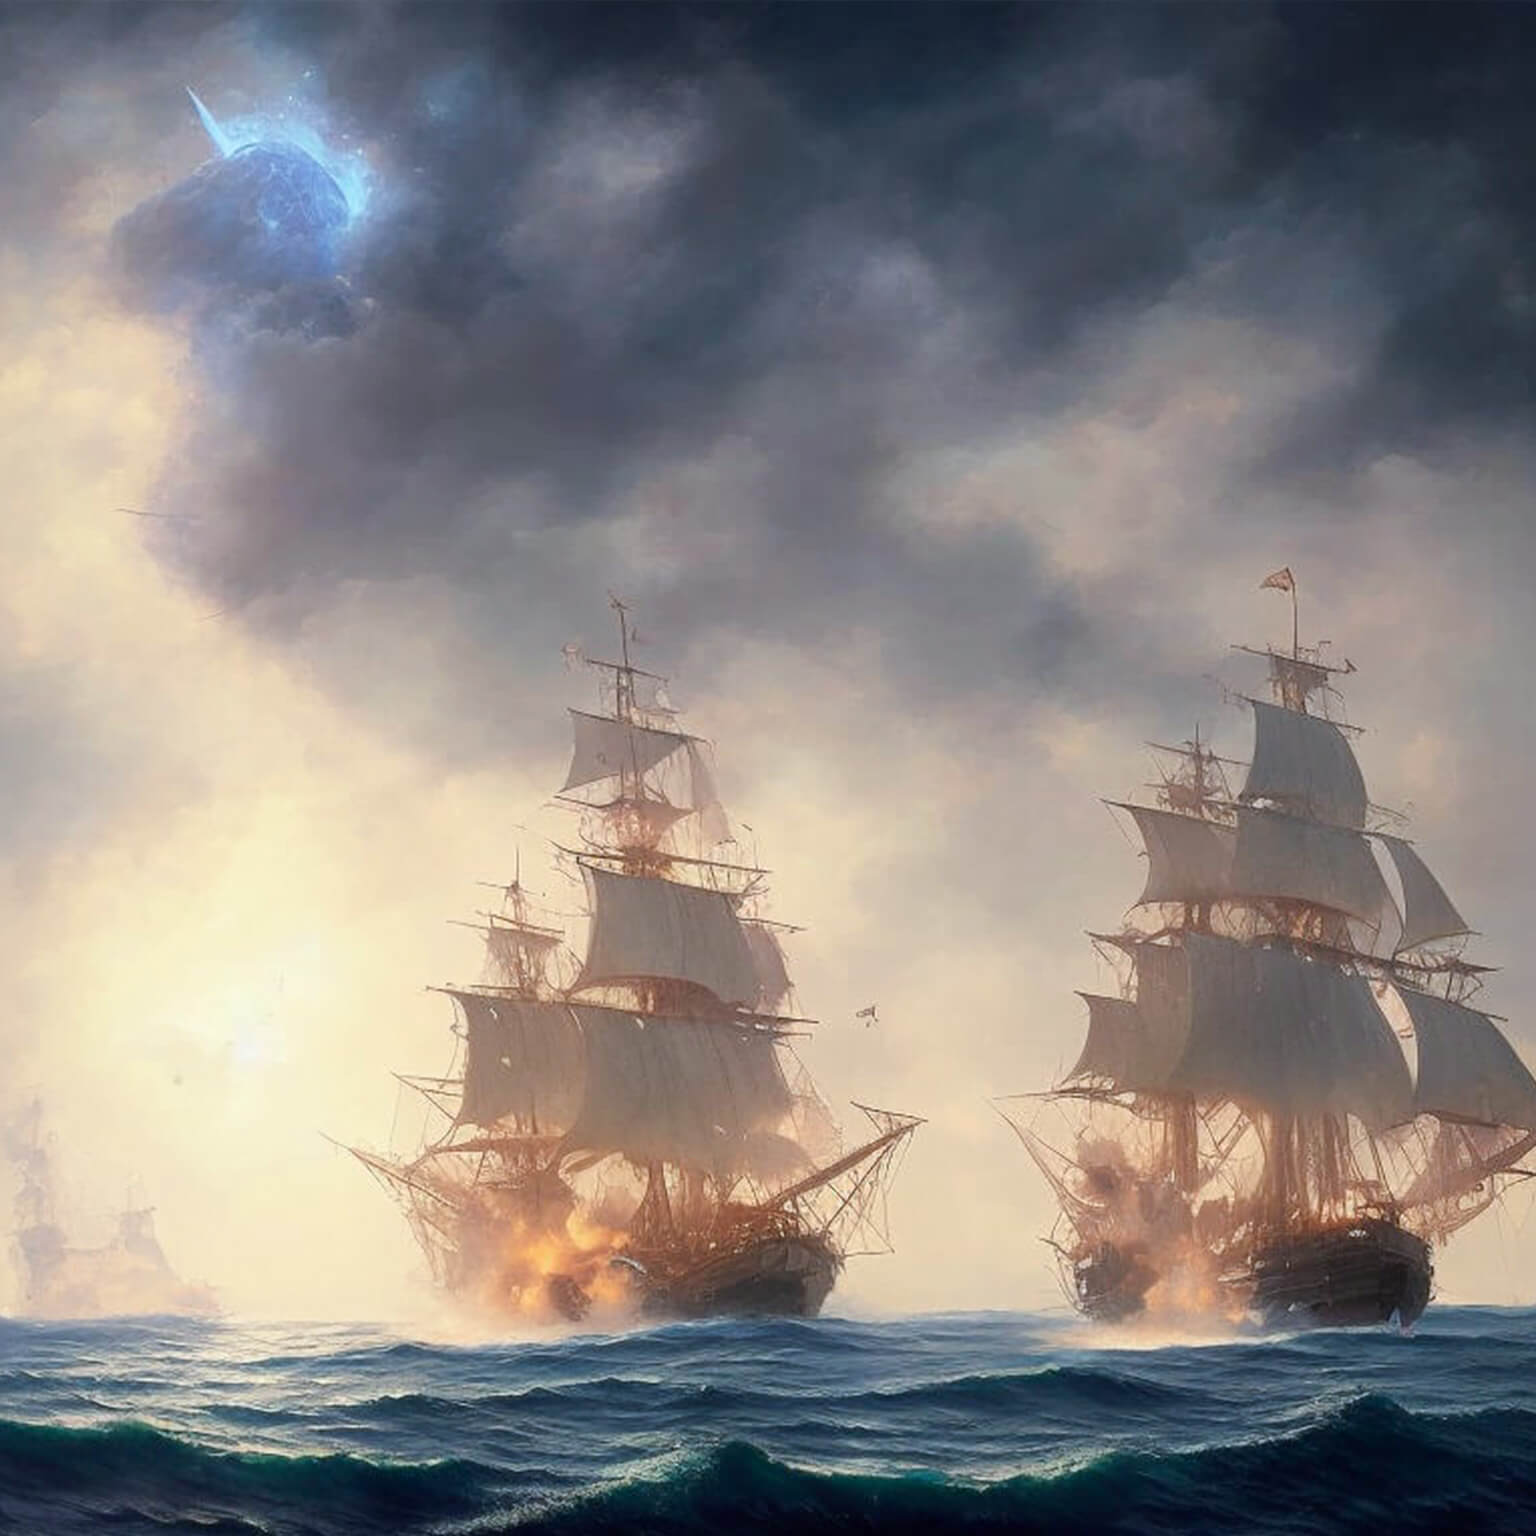 Ein KI Bild von einer Flotte von alten Segelschiffen im Sturm